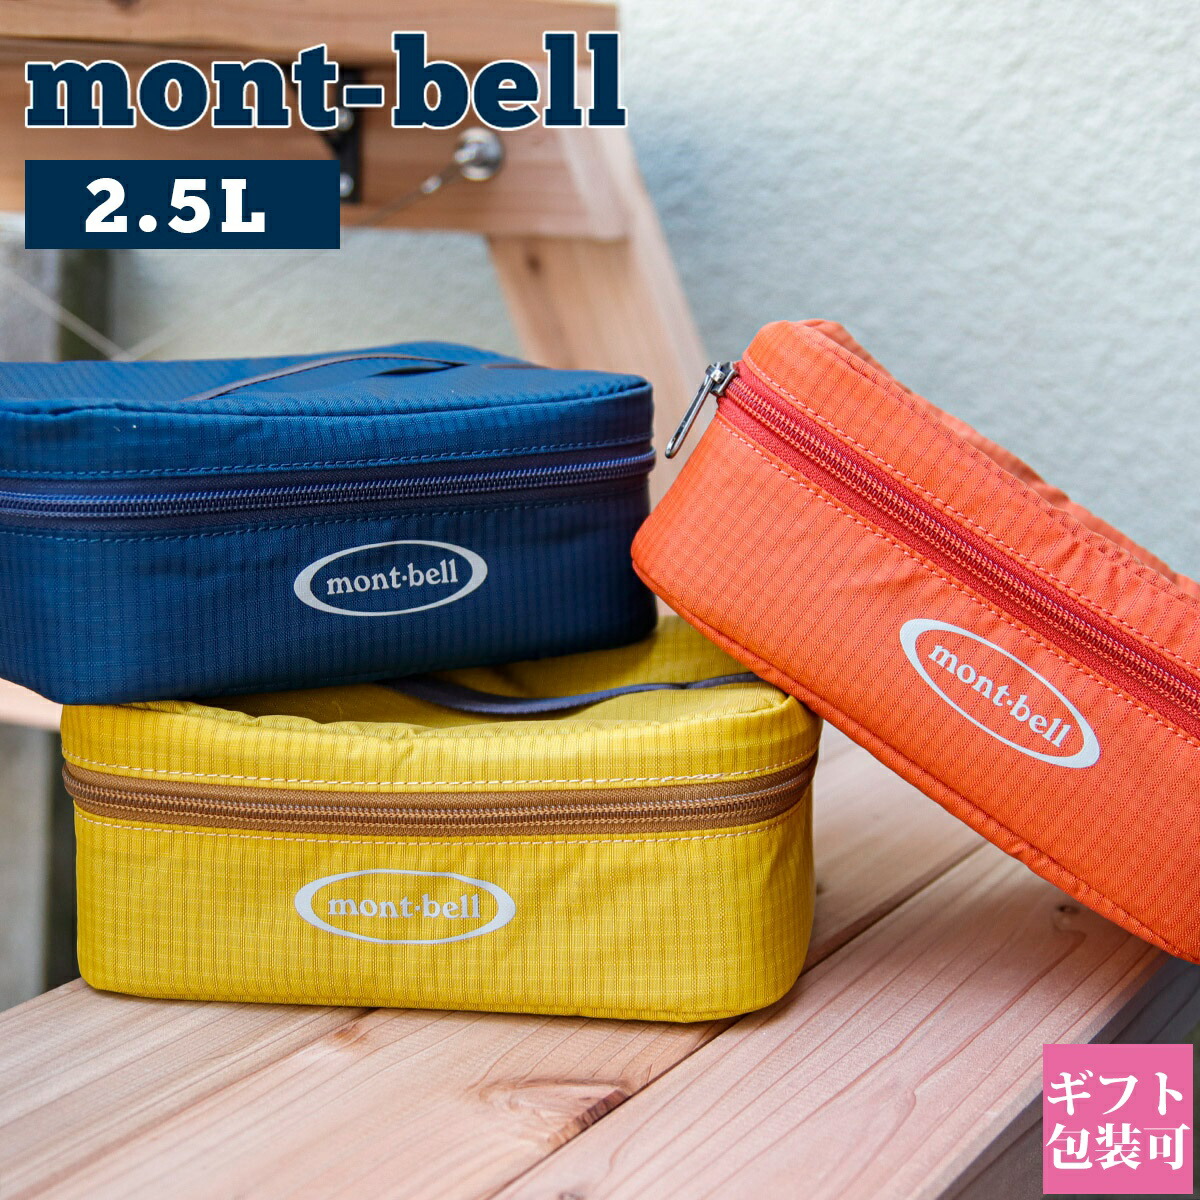 モンベル mont-bell バッグ クーラーバッグ ポーチ 2.5L 1124238 持ち運び バーベキュー BBQ キャンプ アウトドア グッズ 保冷 保温 ブランド 正規品 新品 通販 2023 母の日 ギフト